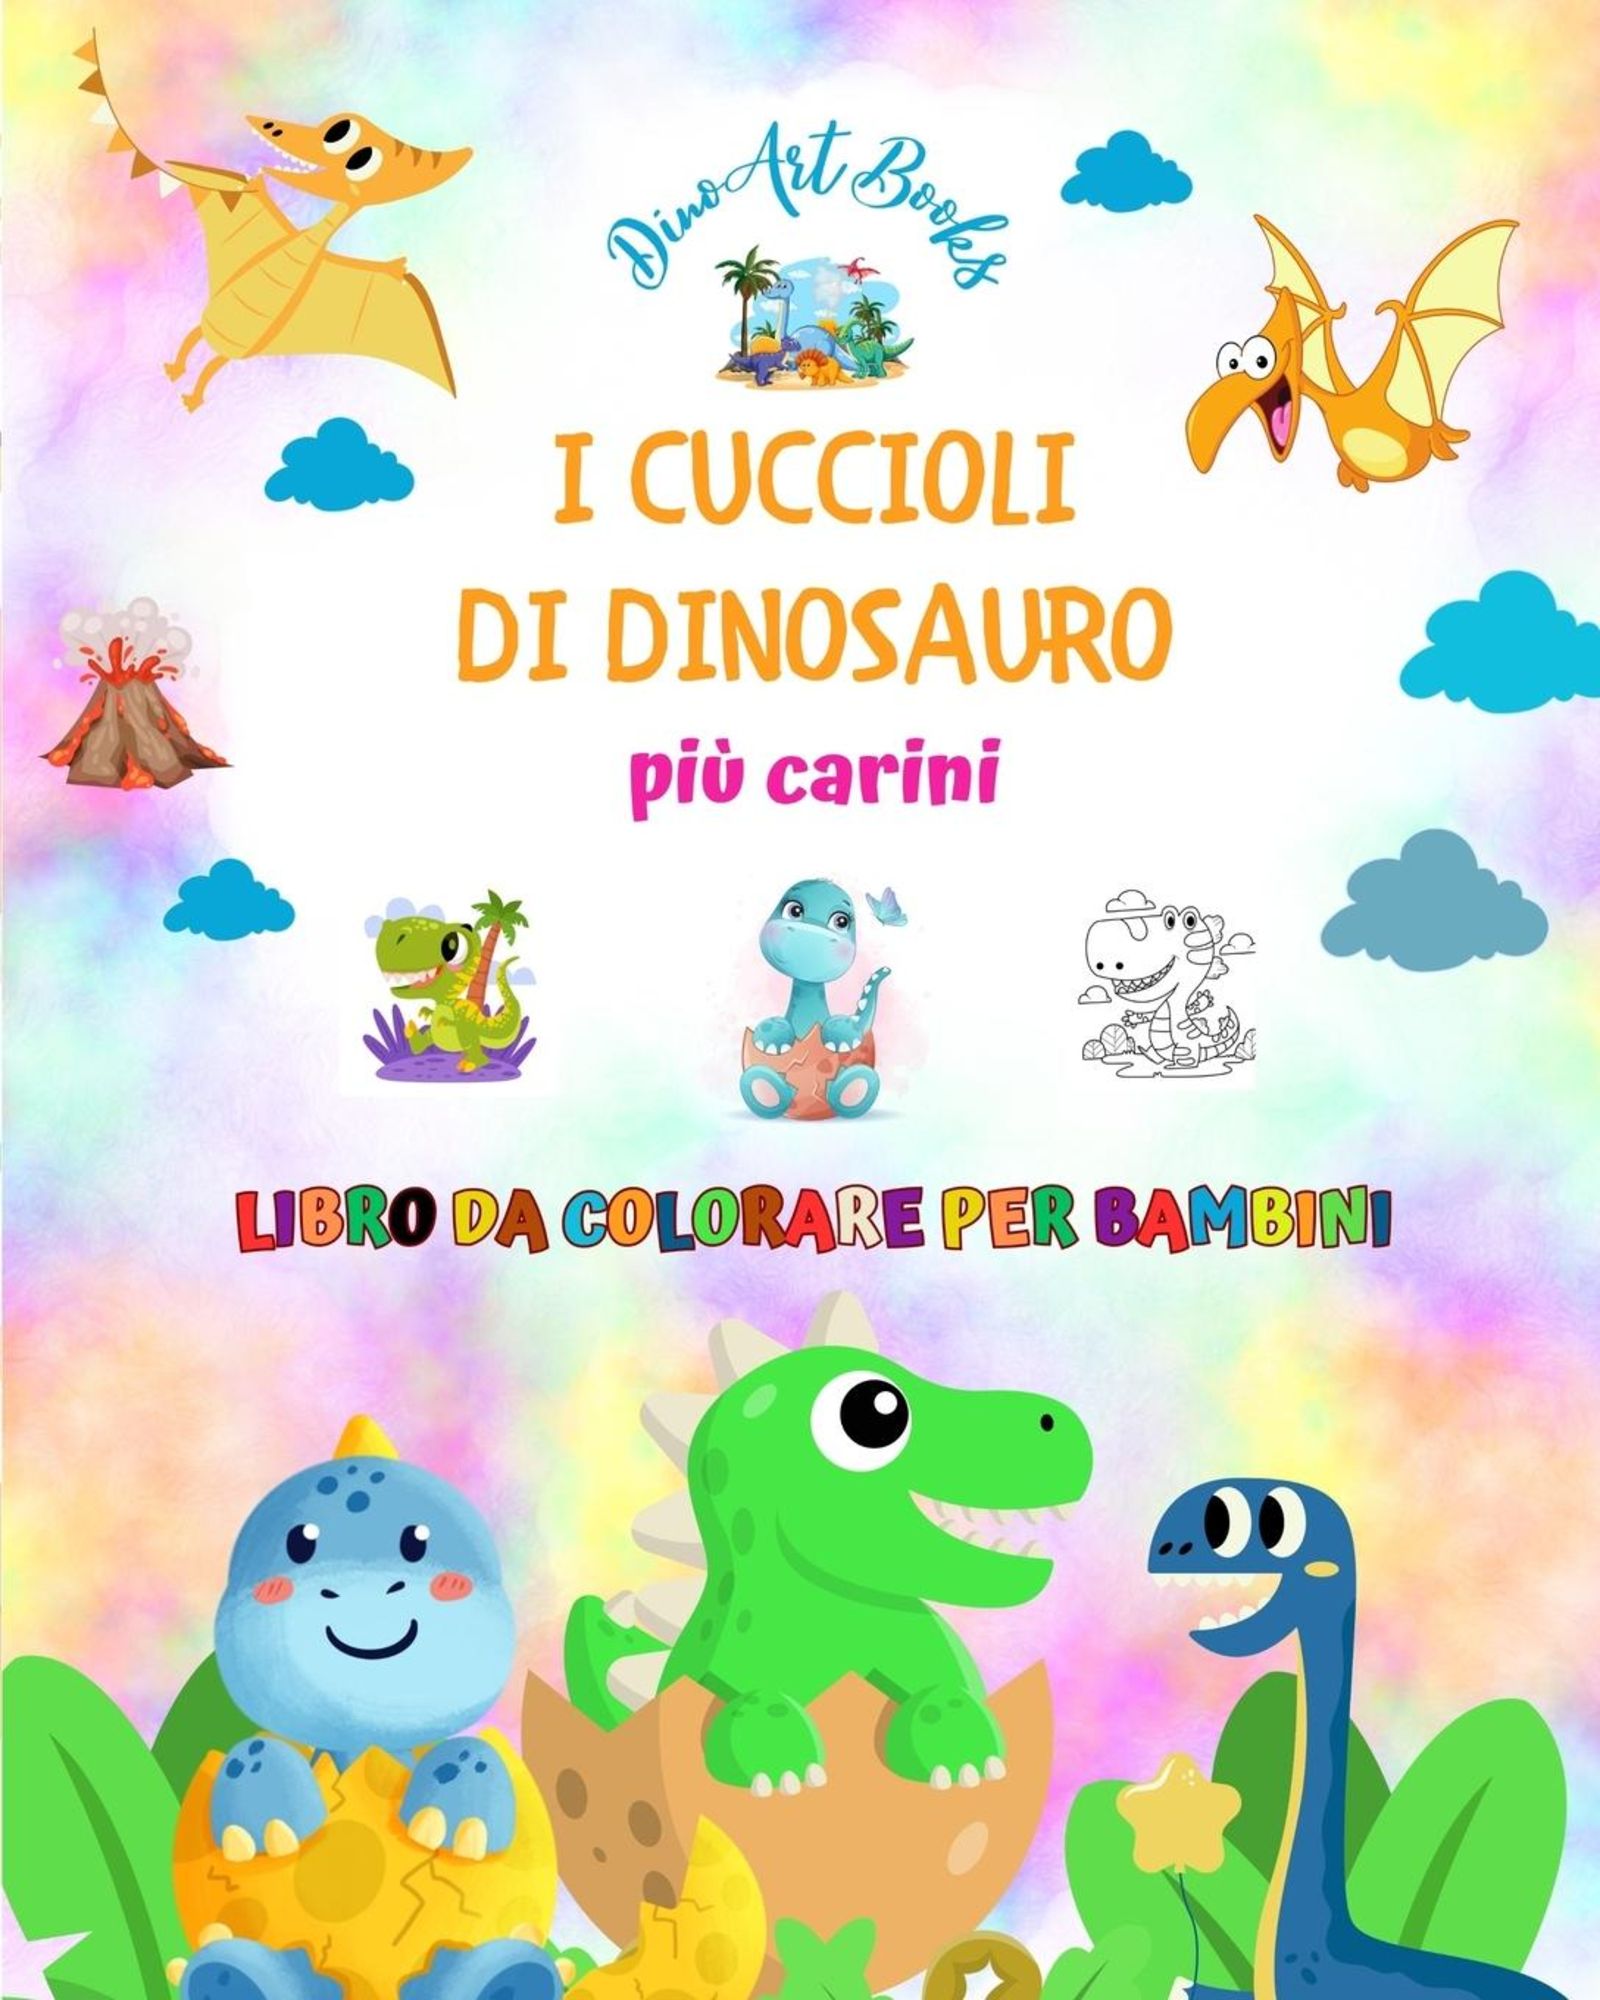 I cuccioli di dinosauro più carini - Libro da colorare per bambini - Scene  preistoriche uniche di piccoli dinosauri' von 'Dinoart Books' -  'Taschenbuch' - 